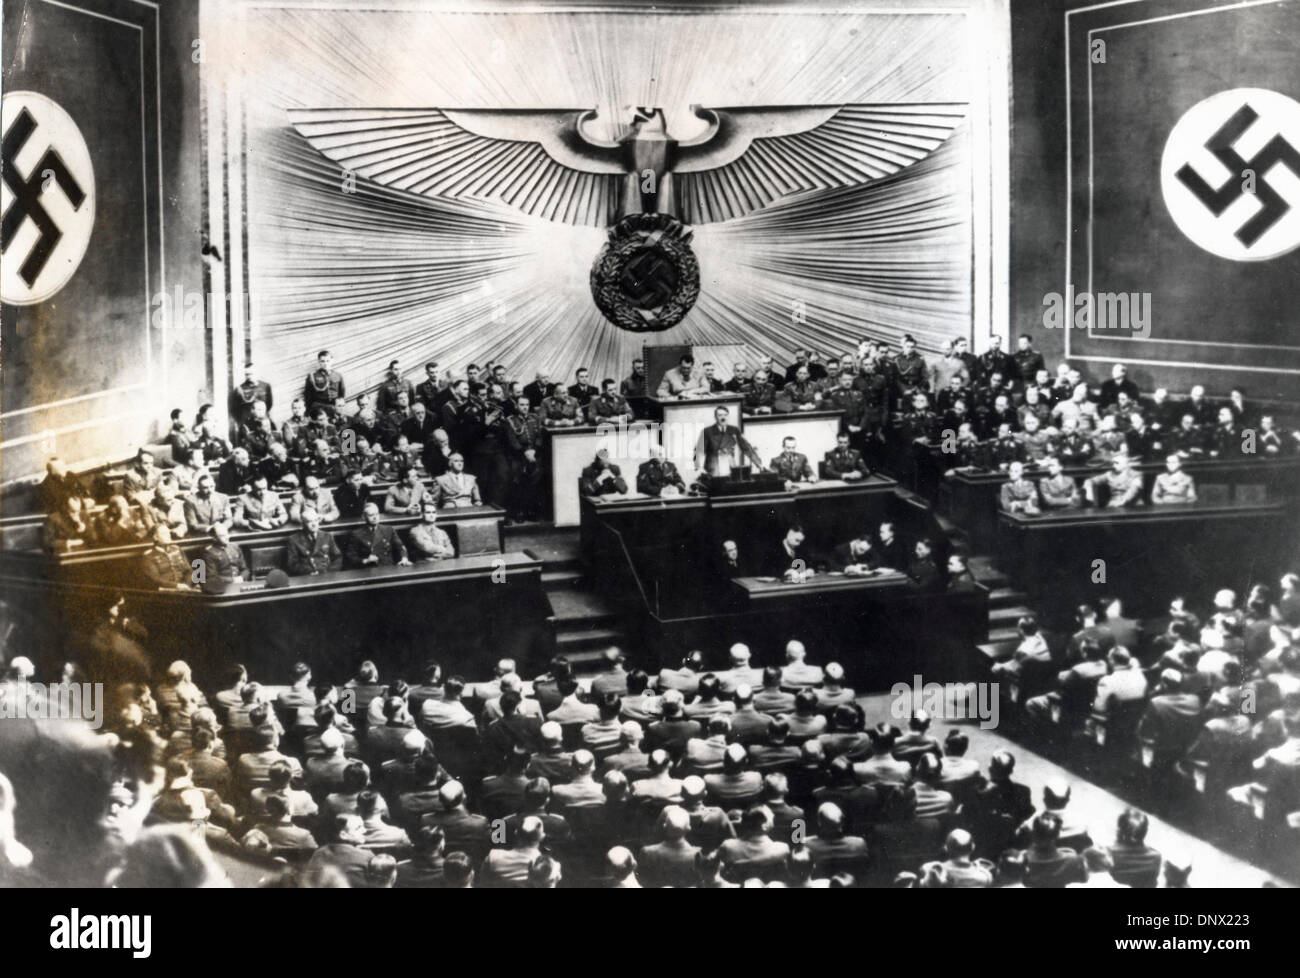 1 maggio 1939 - Berlino, Germania - leader nazista e Führer della Germania, ADOLF HITLER che parla ai suoi seguaci in occasione di una conferenza tenutasi nel 1939. (Credito Immagine: © Keystone Pictures USA/ZUMAPRESS.com) Foto Stock